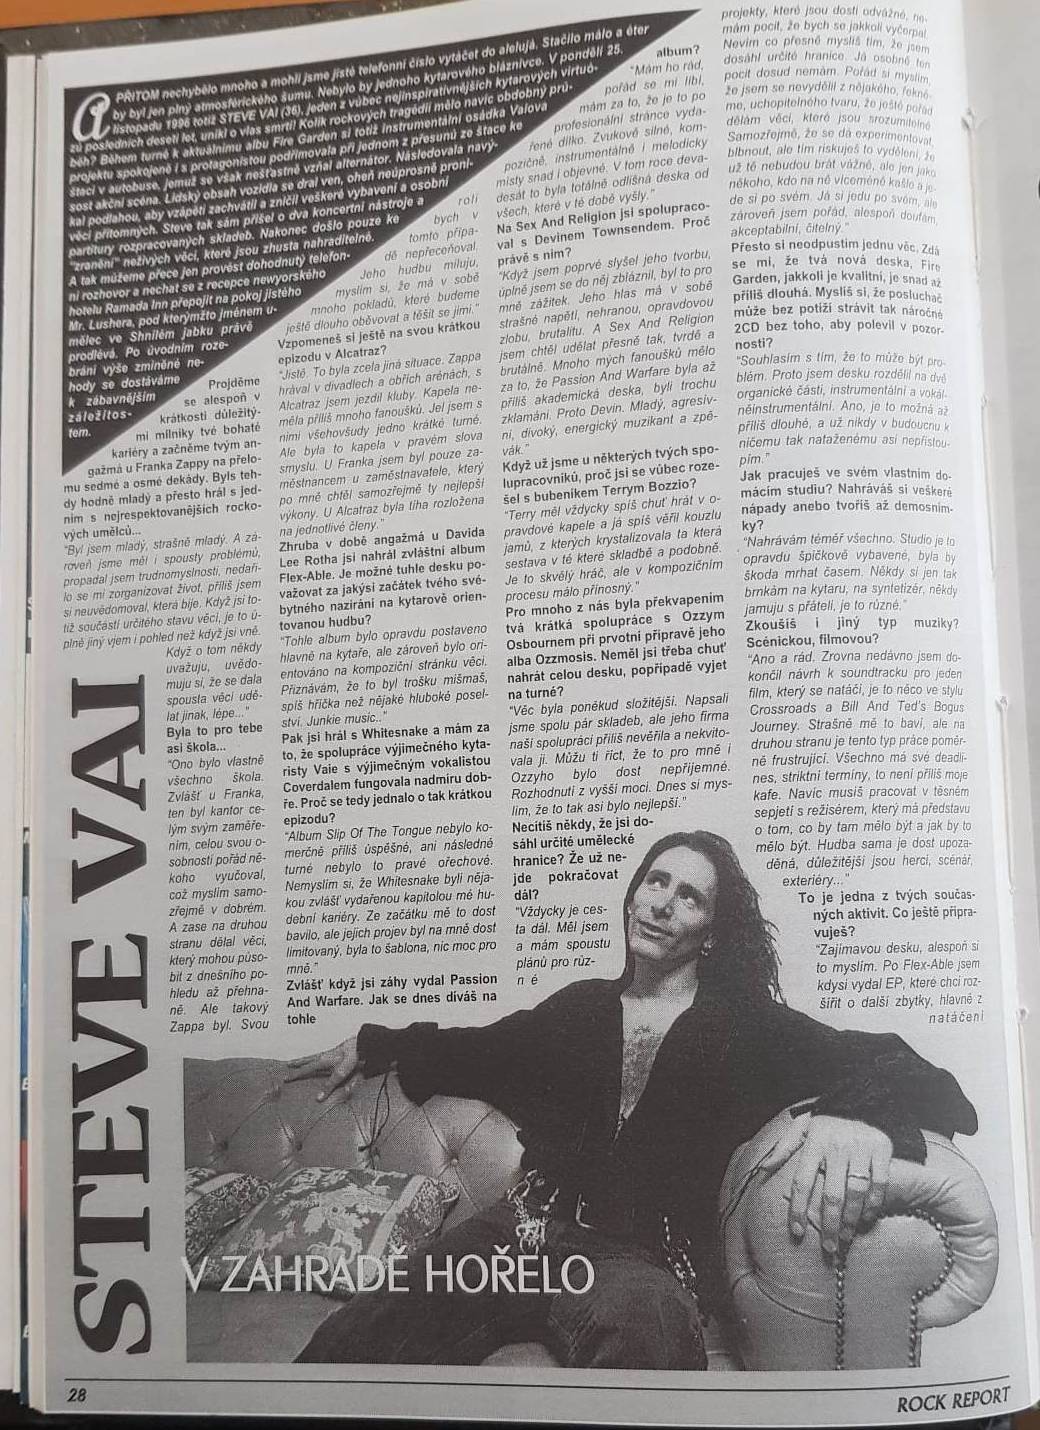 RETRO 90s | Steve Vai: Projev Whitesnake byl dost limitovaný. Byla to šablona, nic pro mě